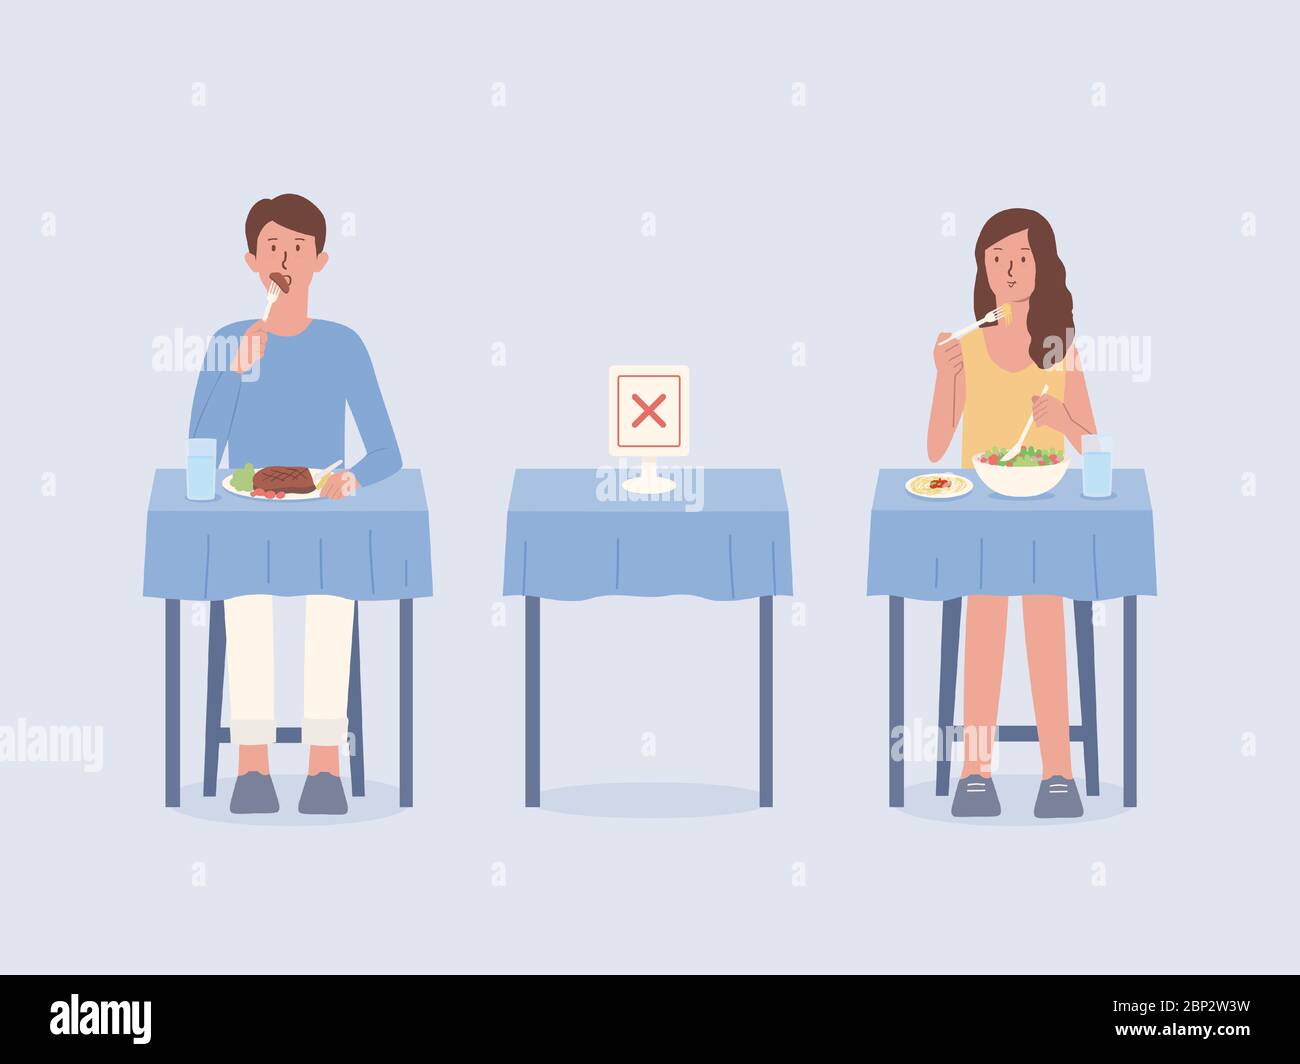 Uomo e donne che fanno divaricarsi sociale mentre mangiano il cibo da soli ai tavoli del ristorante. Lasciare spazio vuoto per evitare e impedire la diffusione di Coronavirus Illustrazione Vettoriale